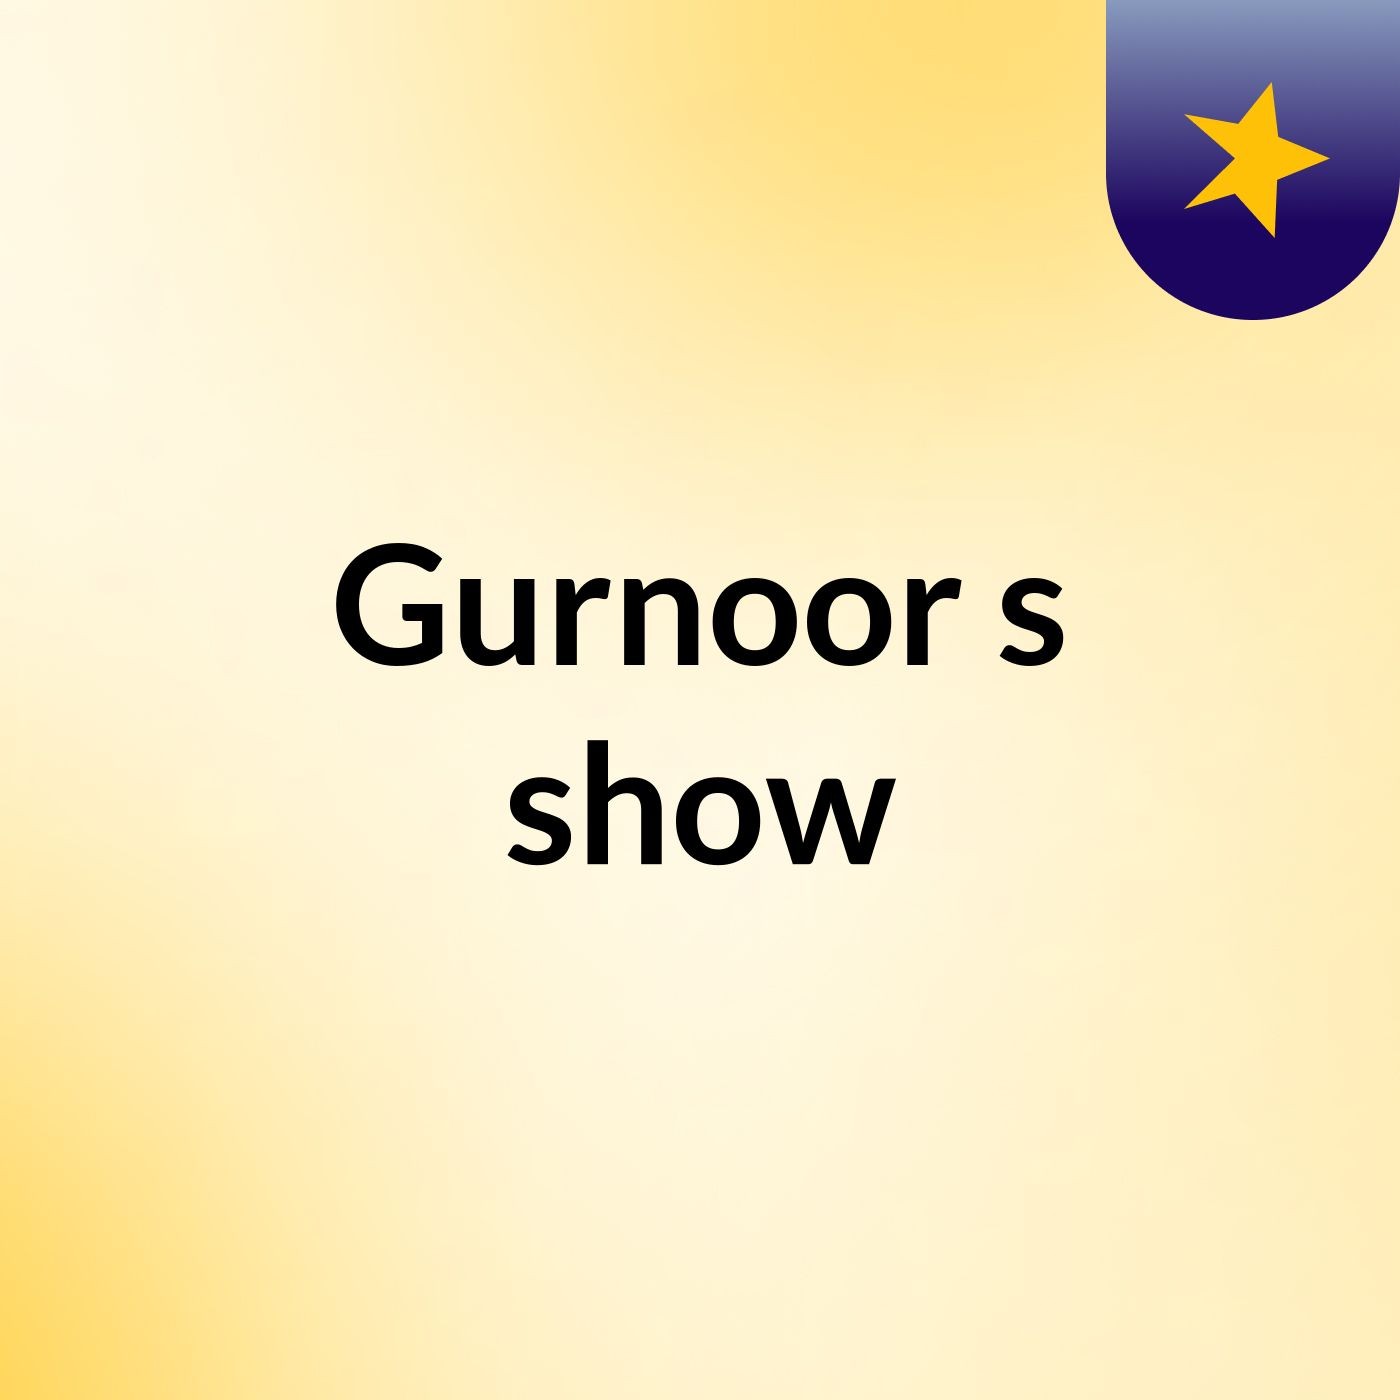 Gurnoor's show